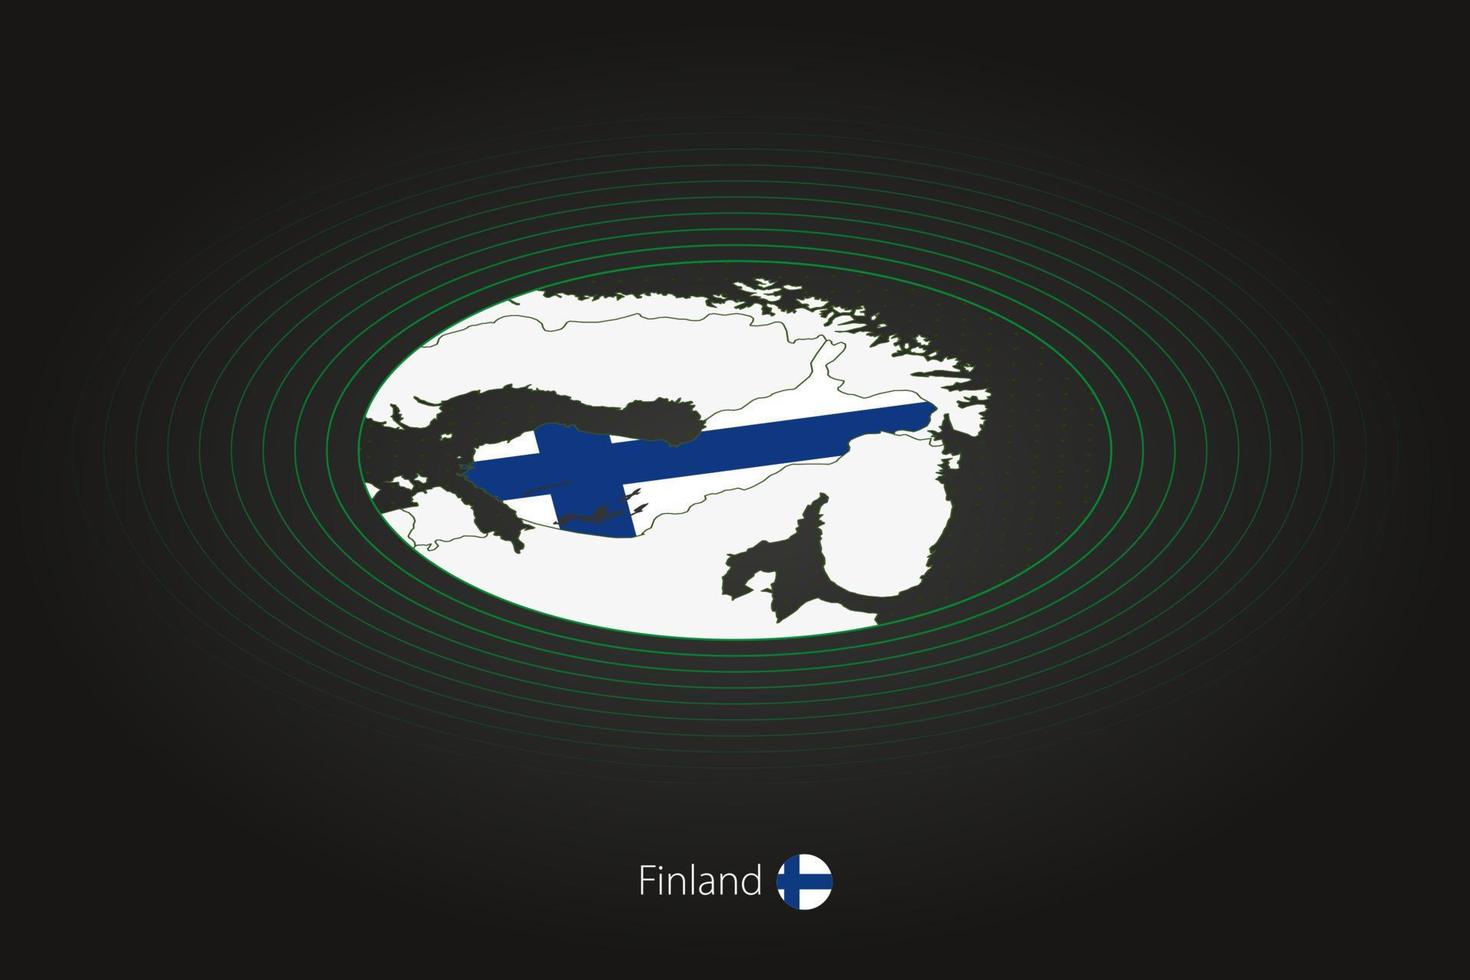 finland Karta i mörk Färg, oval Karta med angränsande länder. vektor